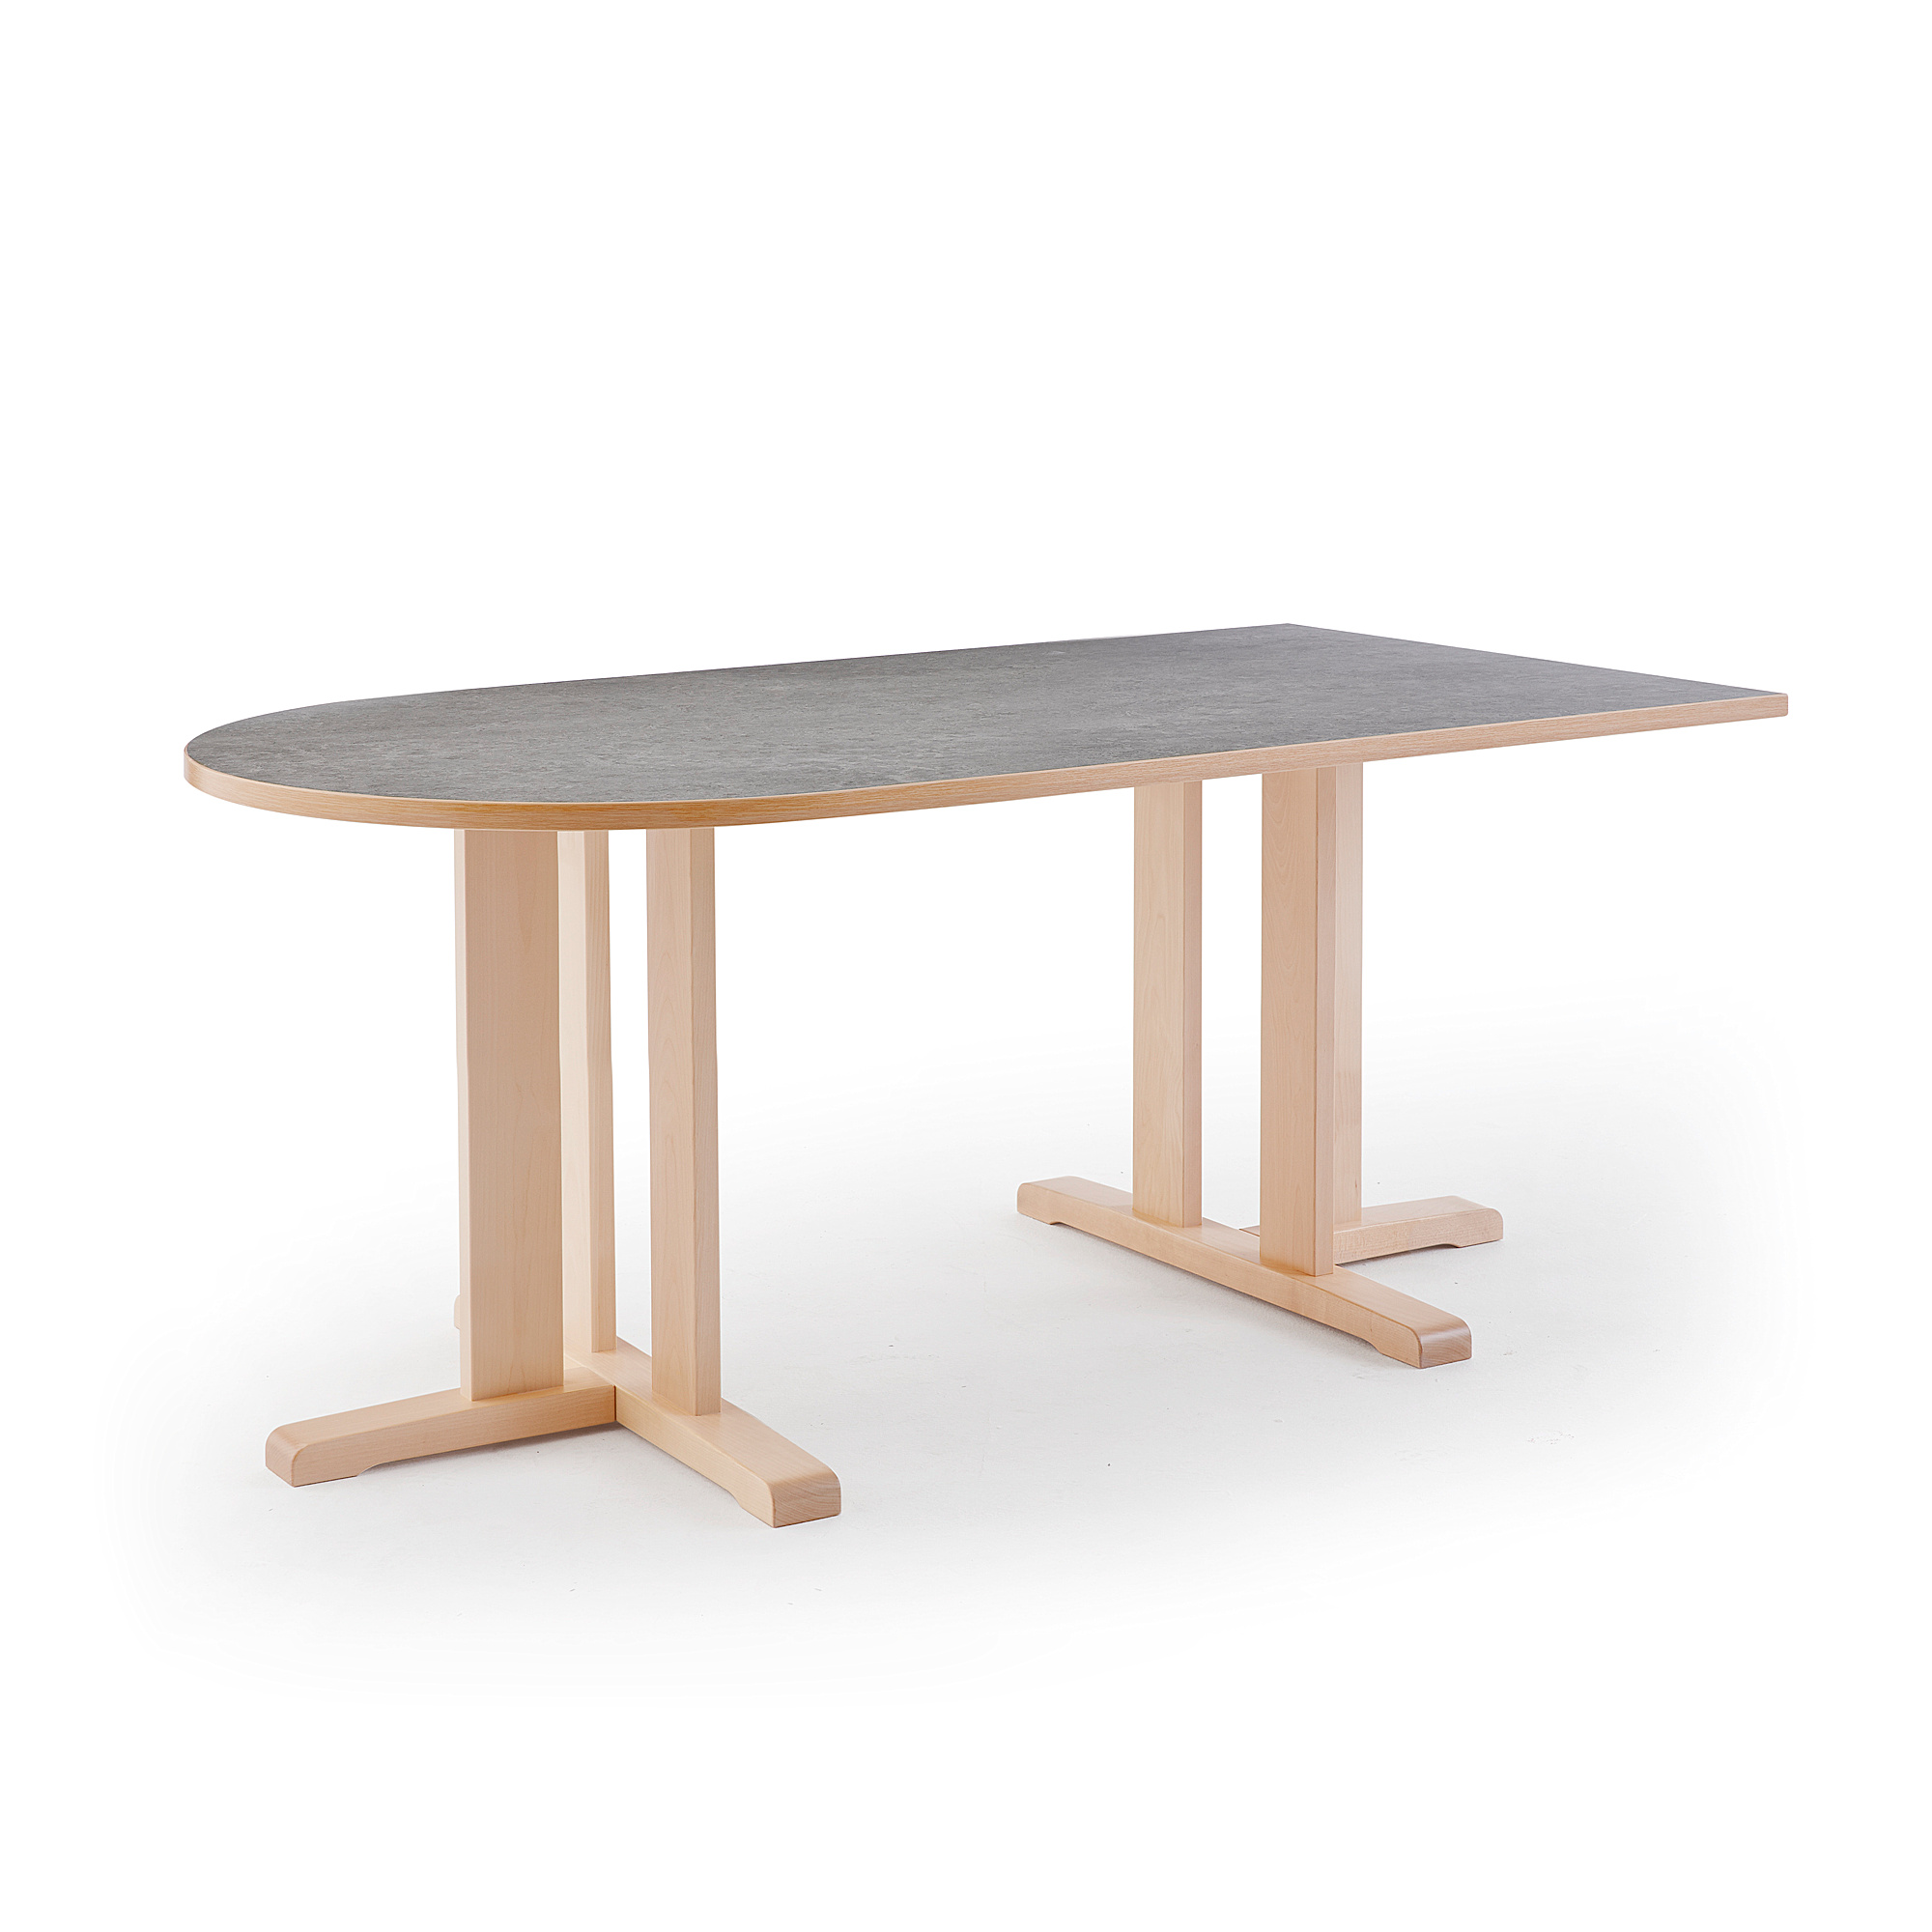 Stůl KUPOL, 1800x800x720 mm, půlovál, akustické linoleum, bříza/šedá